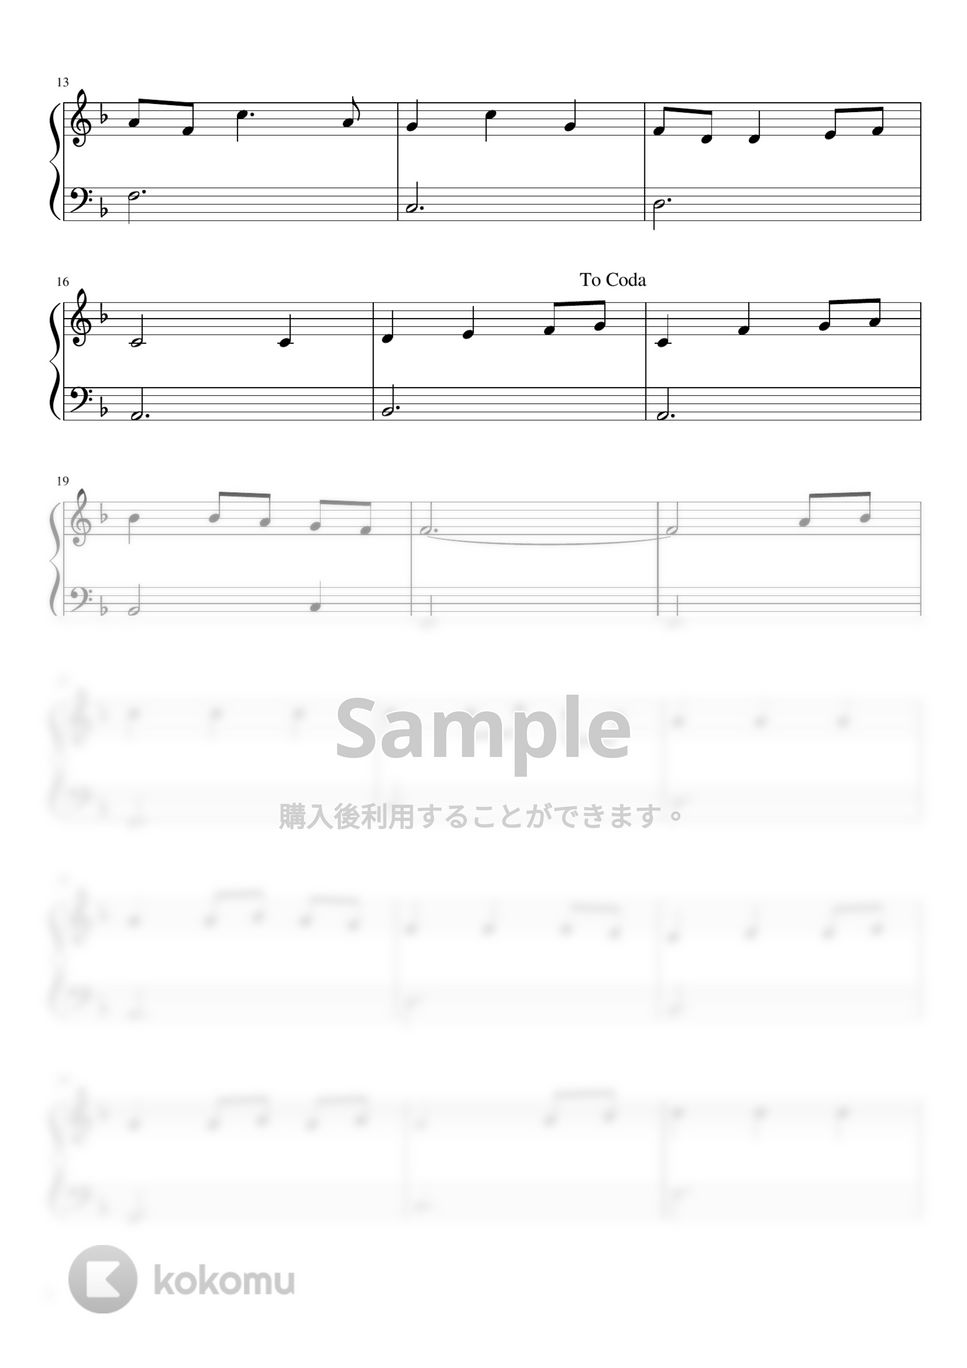 久石譲 - いつも何度でも (ピアノソロ) by pianon